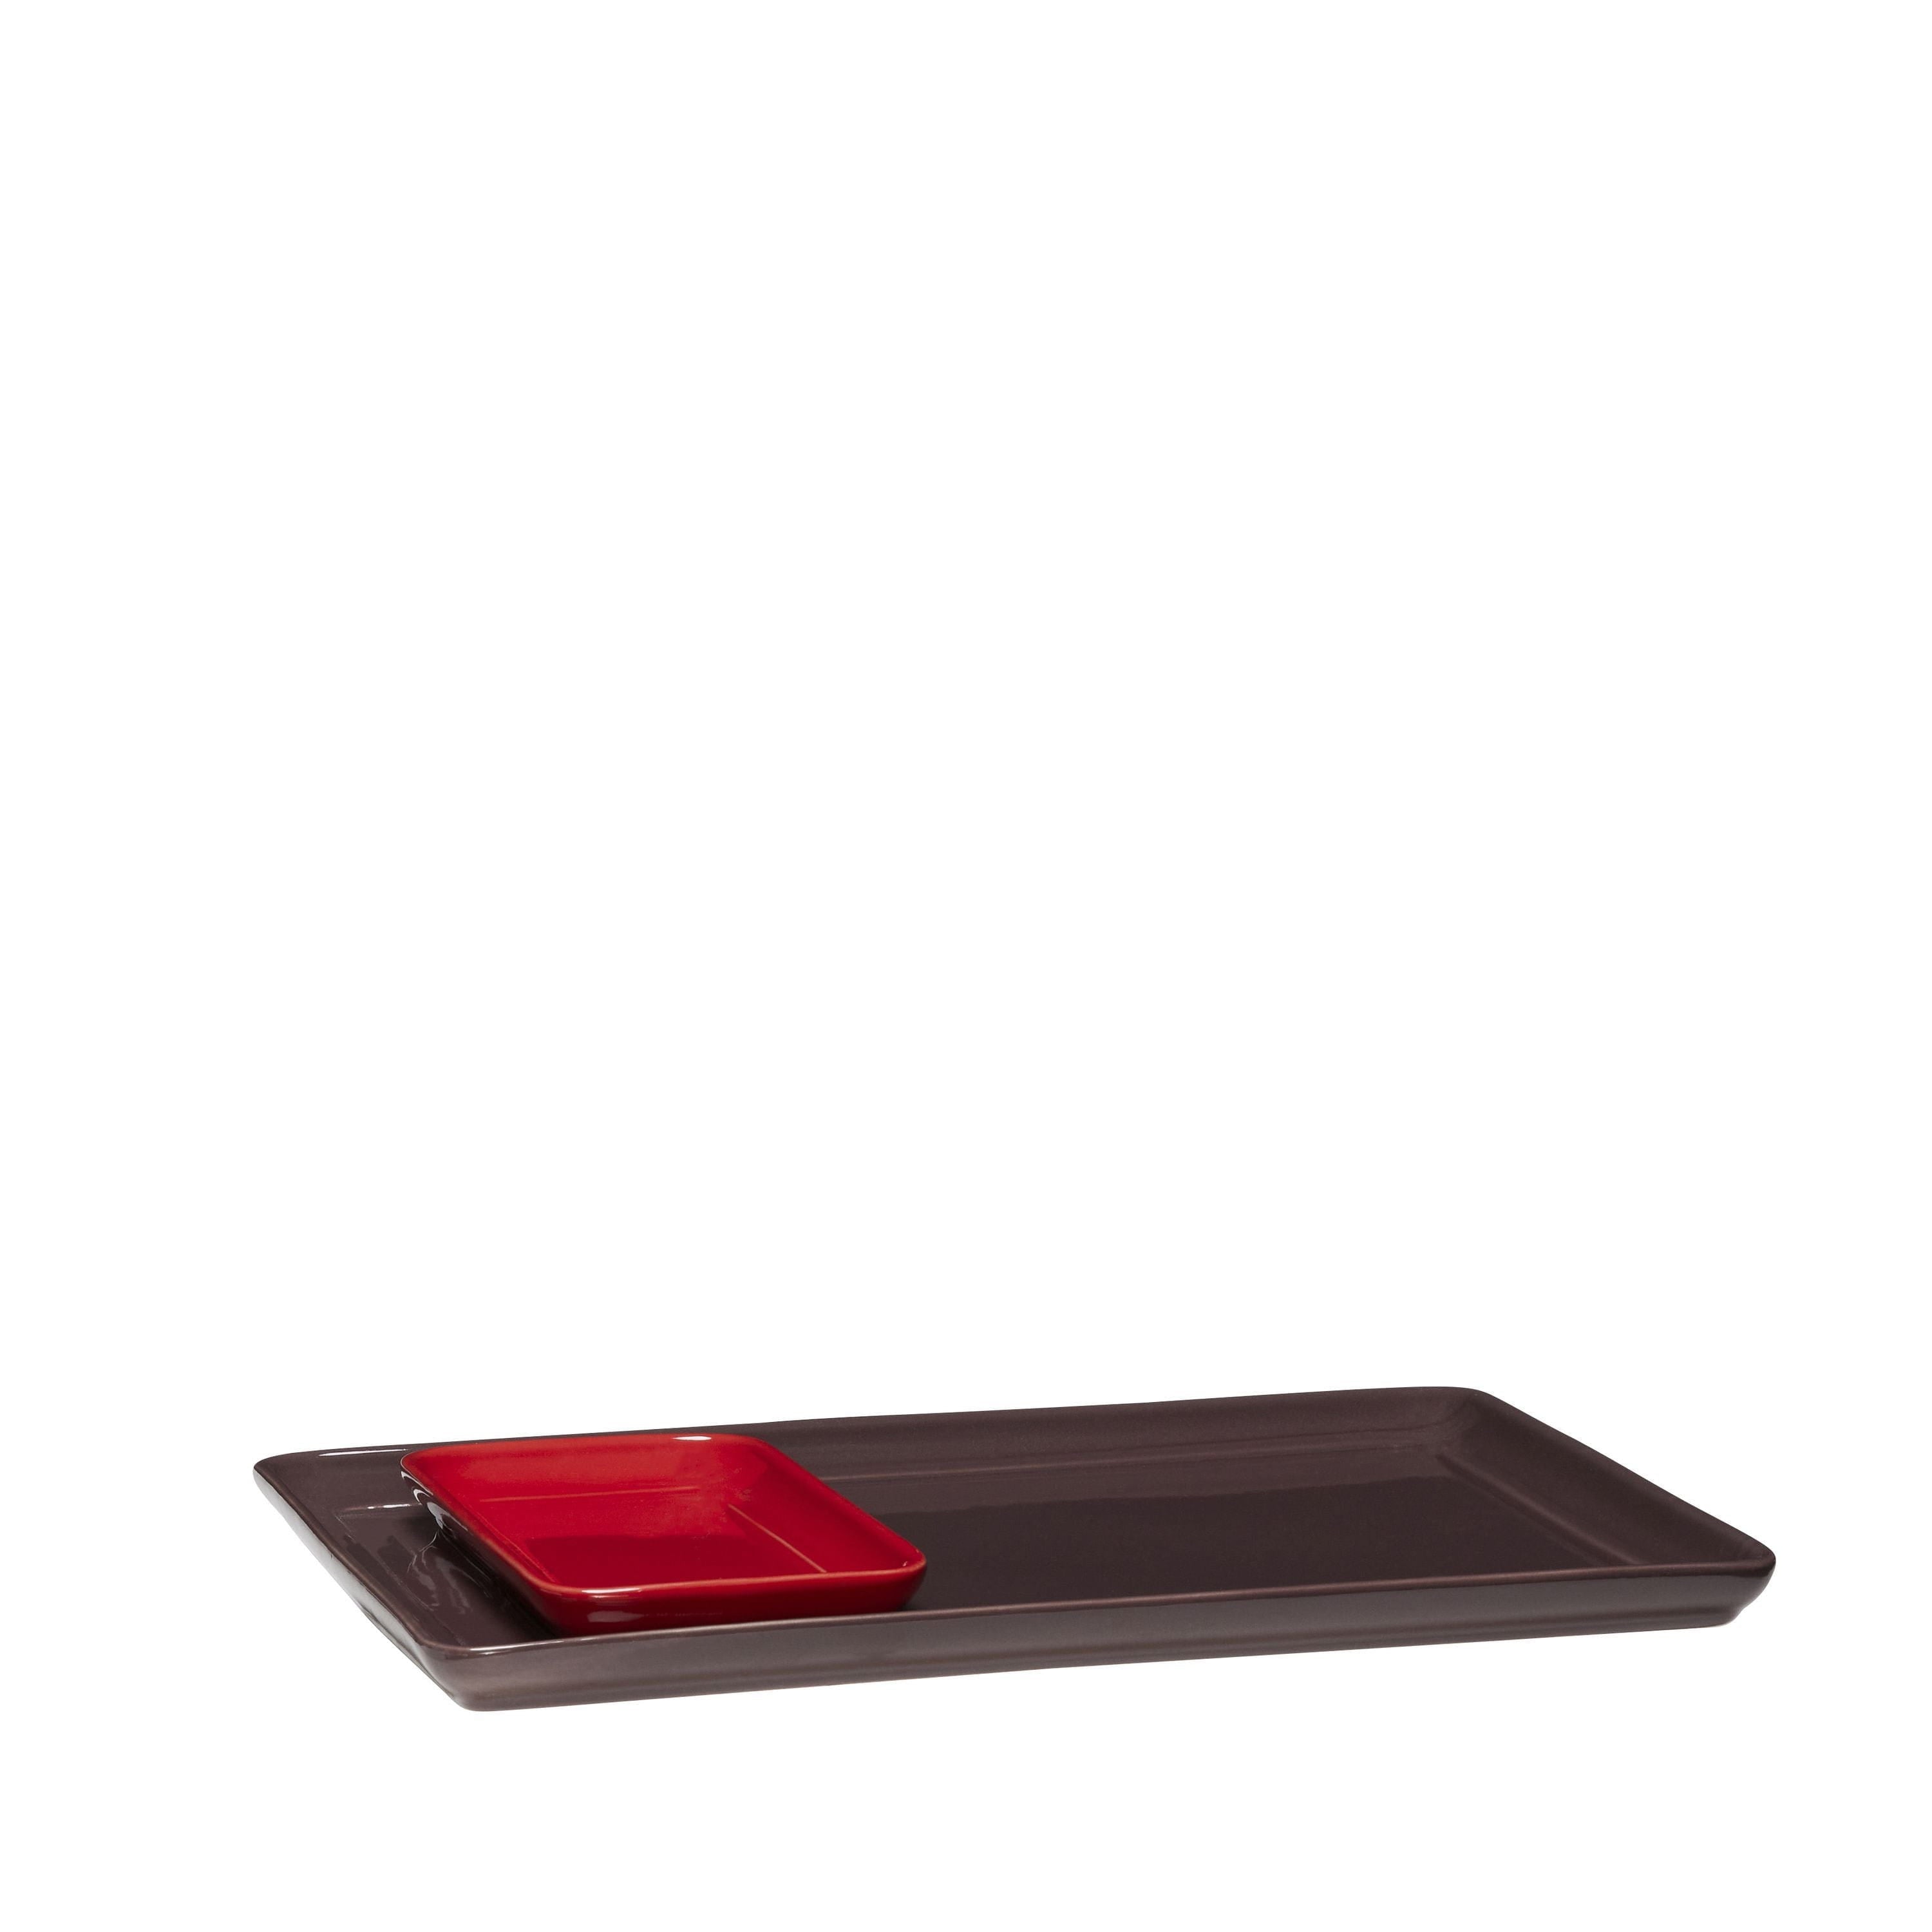 Hübsch Amare Tablett Set de 2, bordeaux / rouge